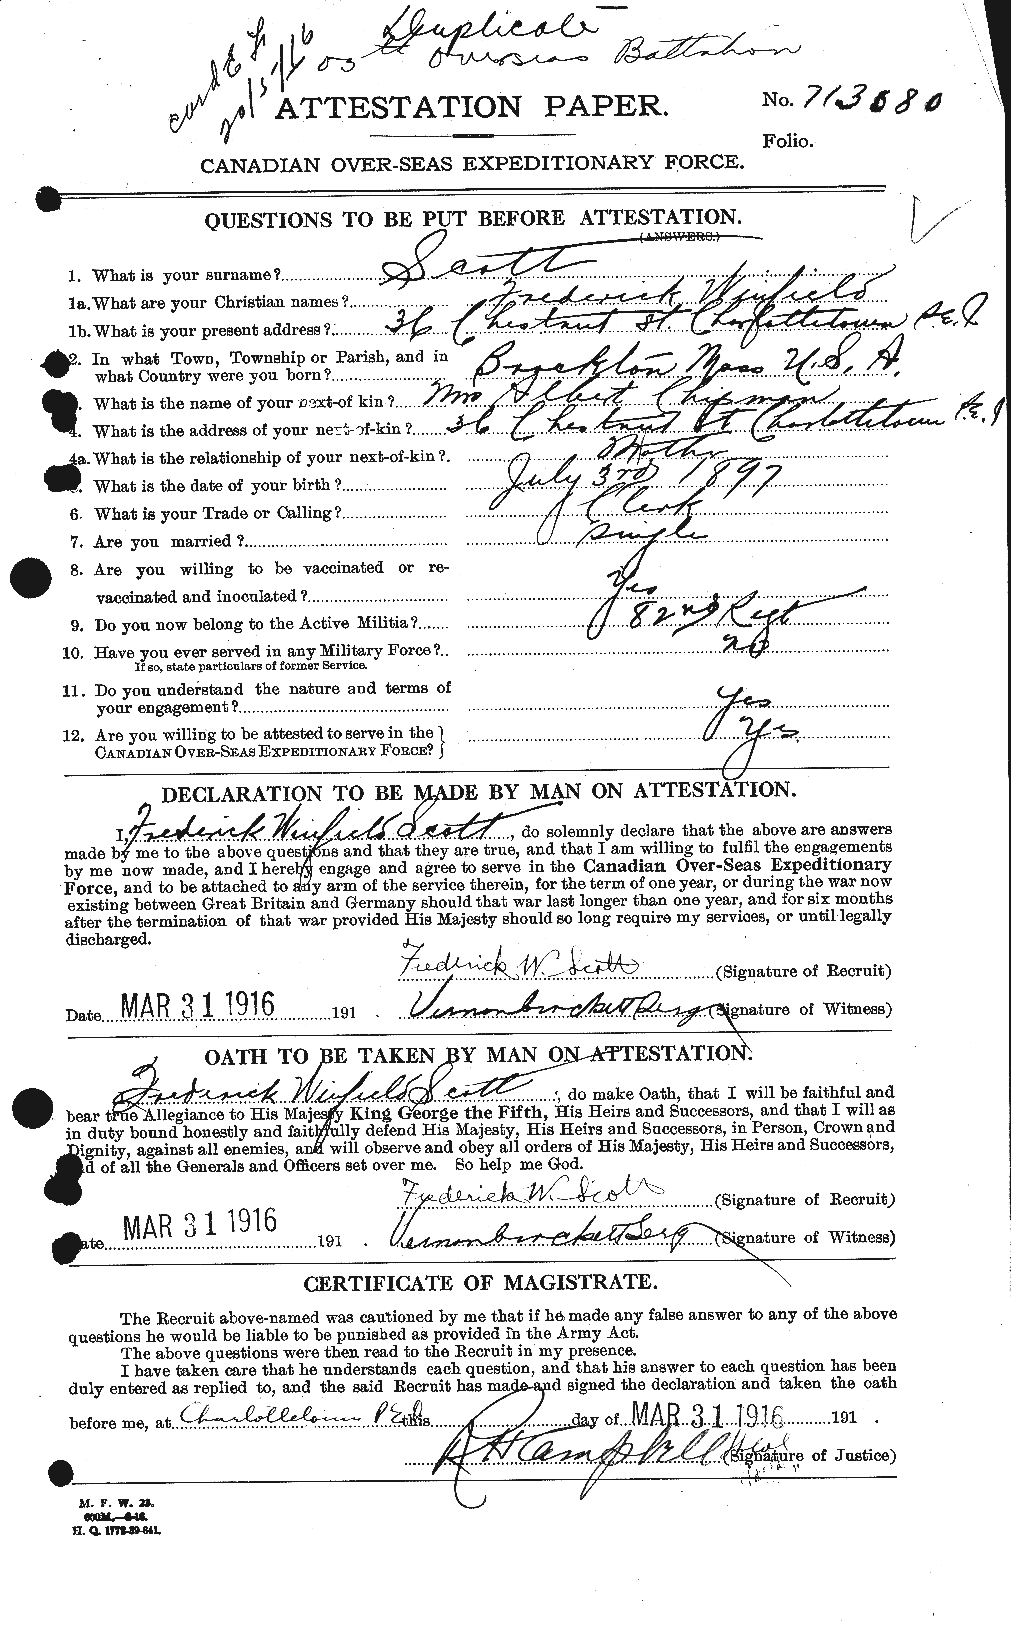 Dossiers du Personnel de la Première Guerre mondiale - CEC 084378a